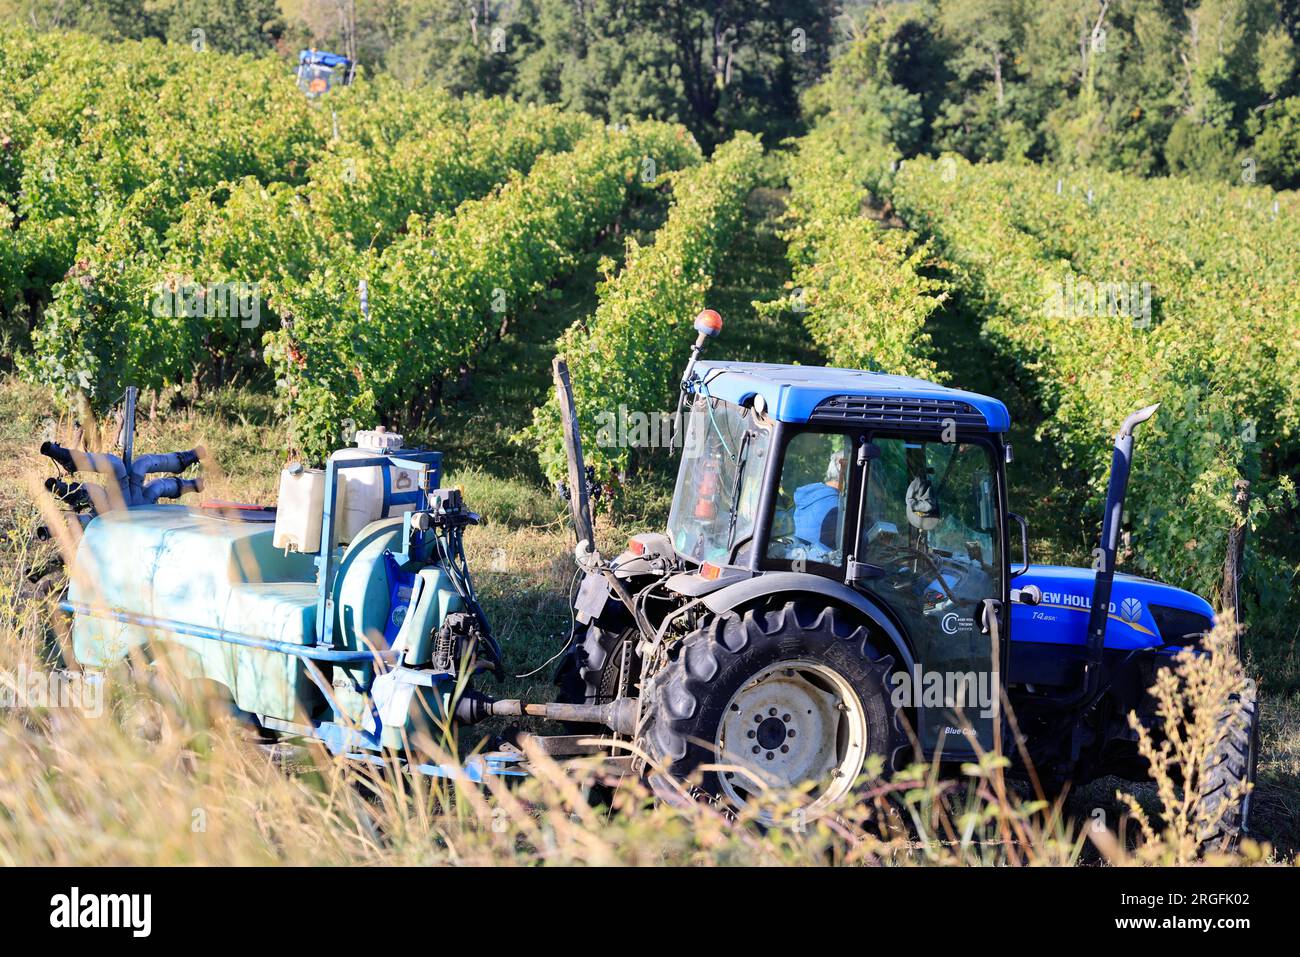 Sulfatage d’une vigne dans le vignoble de Bordeaux. Vignoble de Cadillac et premières côtes de Bordeaux. Gironde, France, Europe Stock Photo